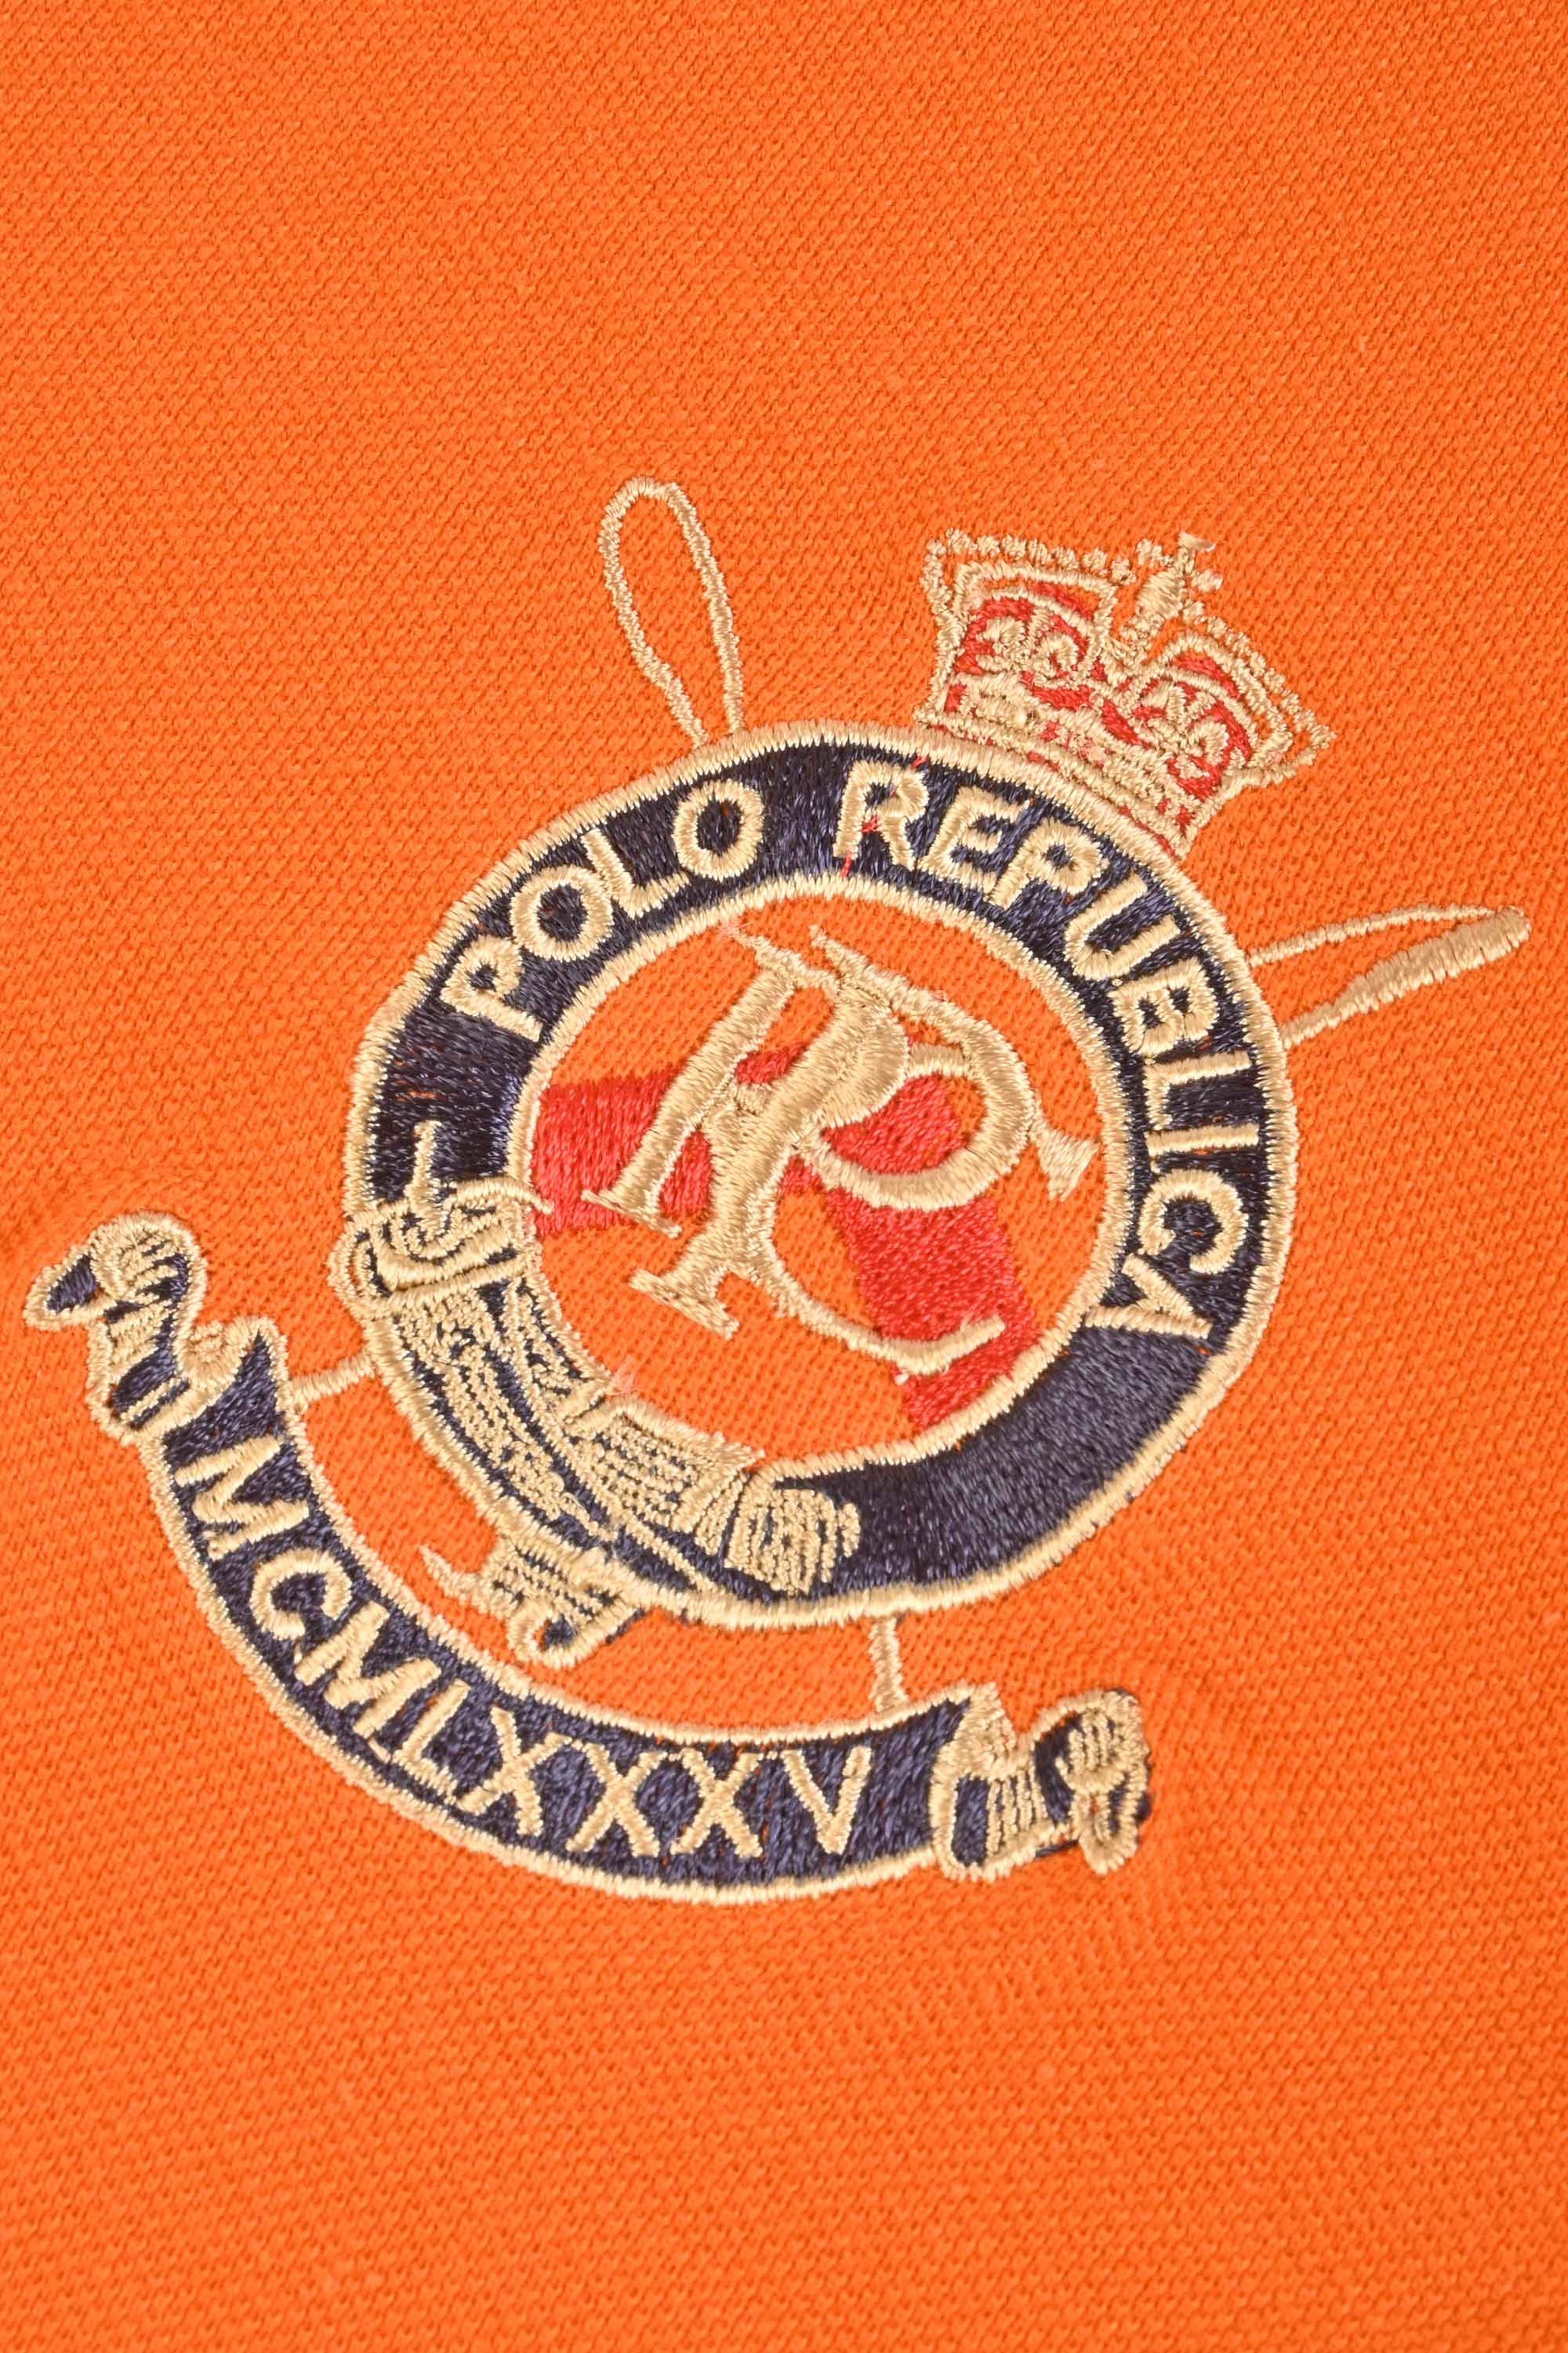 Polo Republica Men's Lion PR Crest & 8 Embroidered Short Sleeve Polo Shirt Men's Polo Shirt Polo Republica 